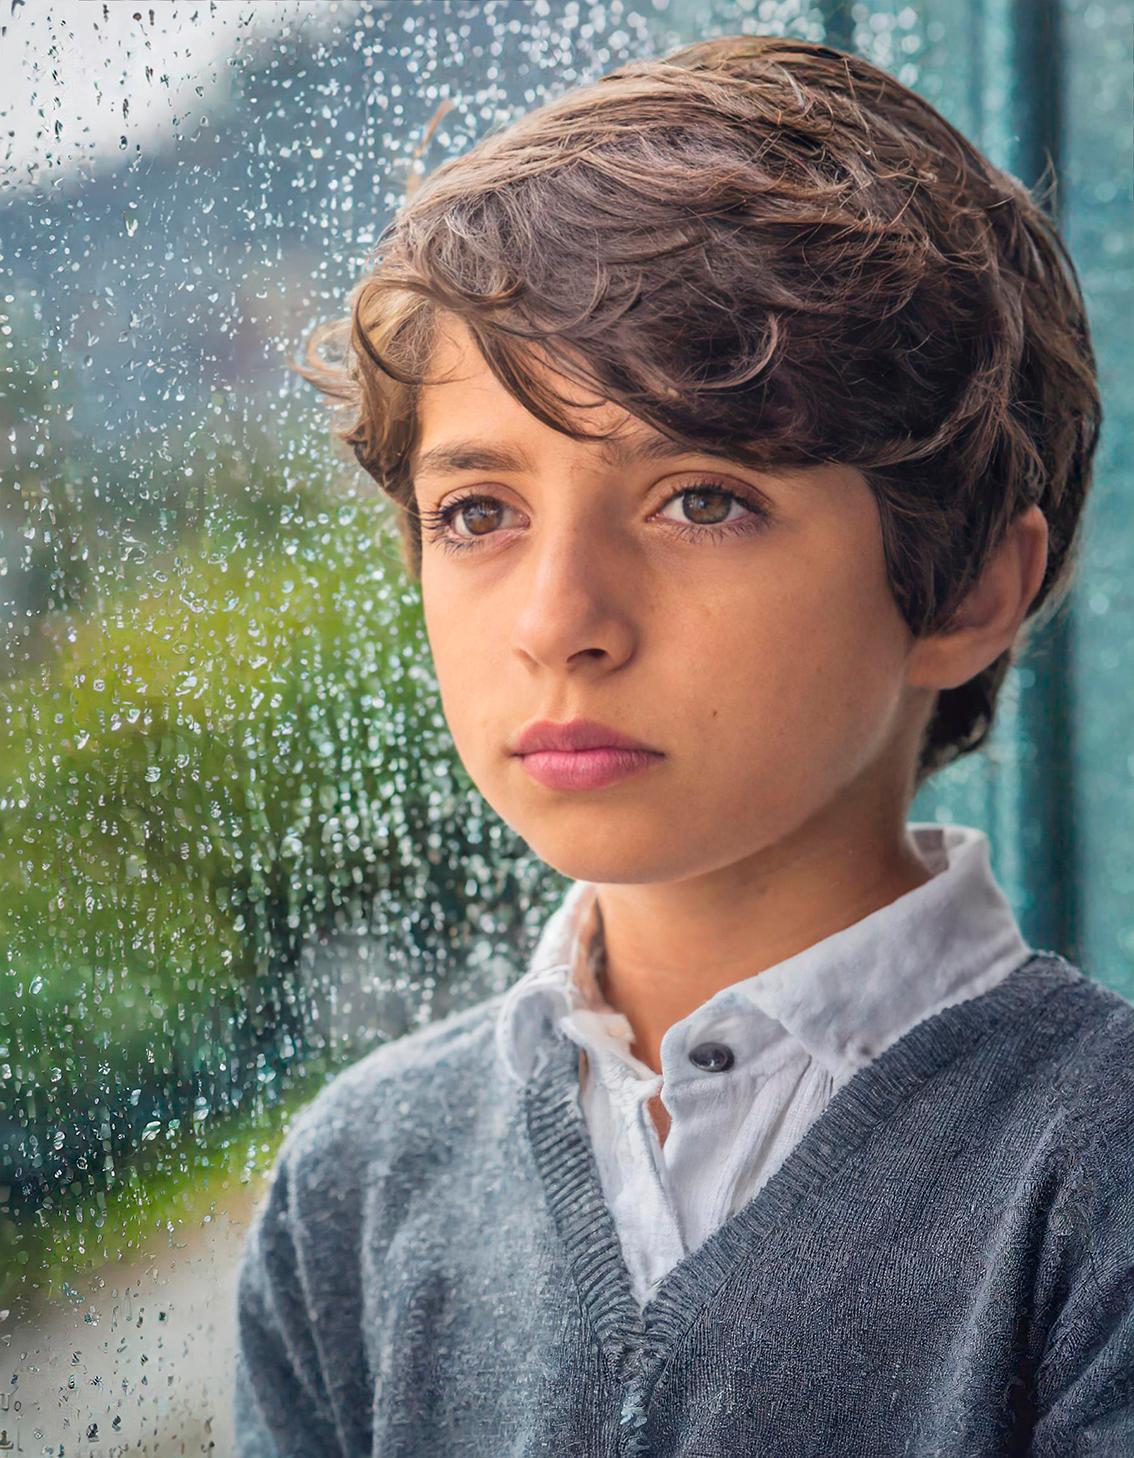 Firefly ritratto di un bambino bcarino triste dietro un vetro con pioggia 59263jpg